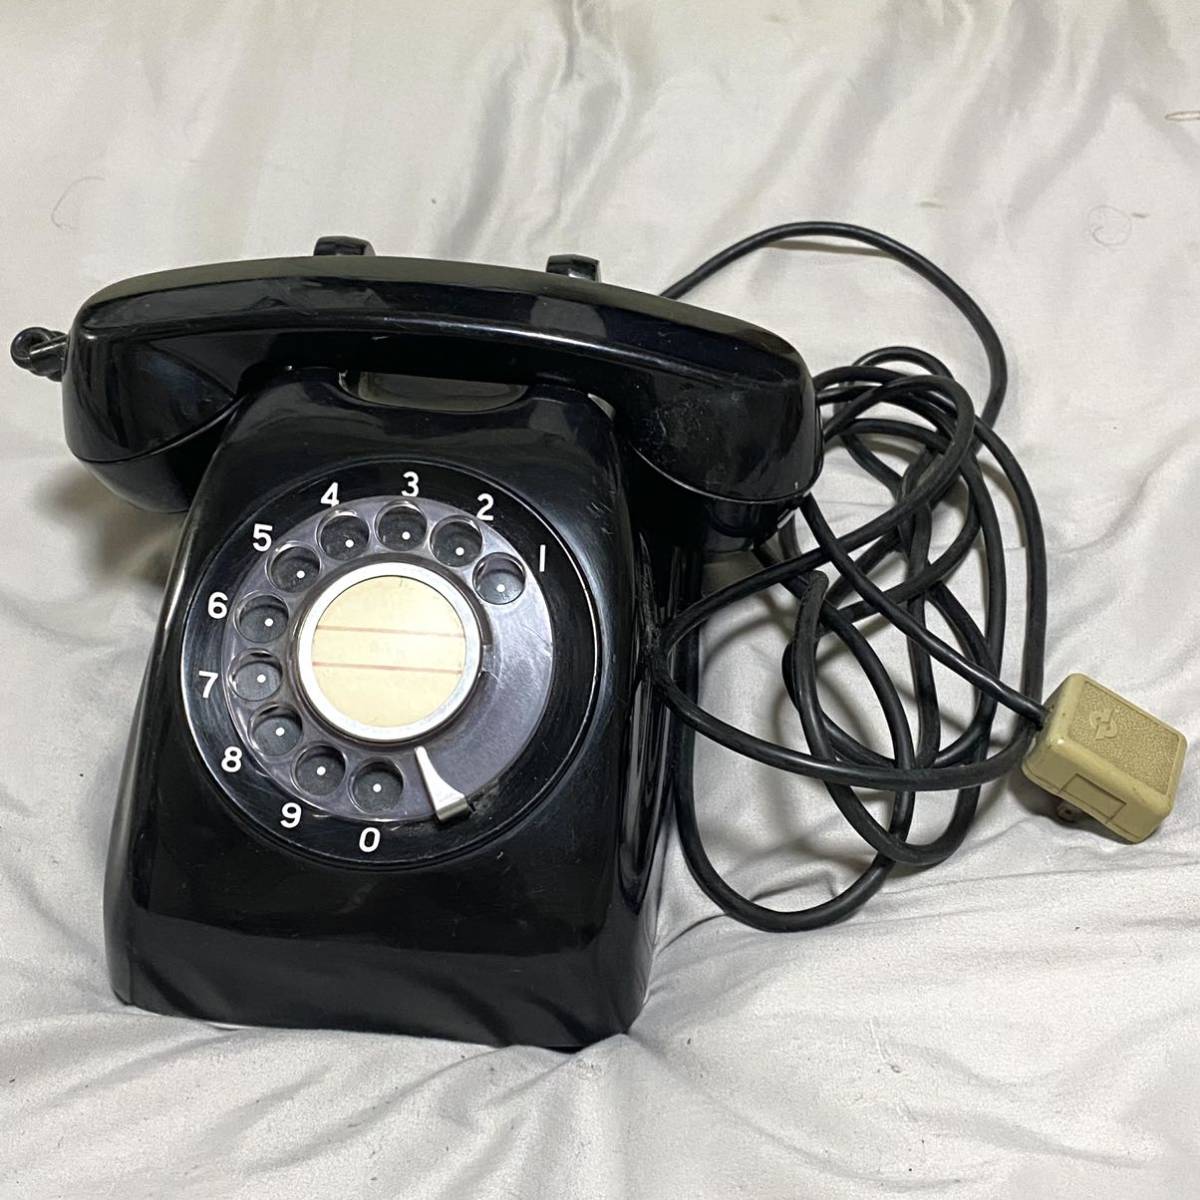 正規認証品!新規格 黒電話 600-A2 vrfilms.in